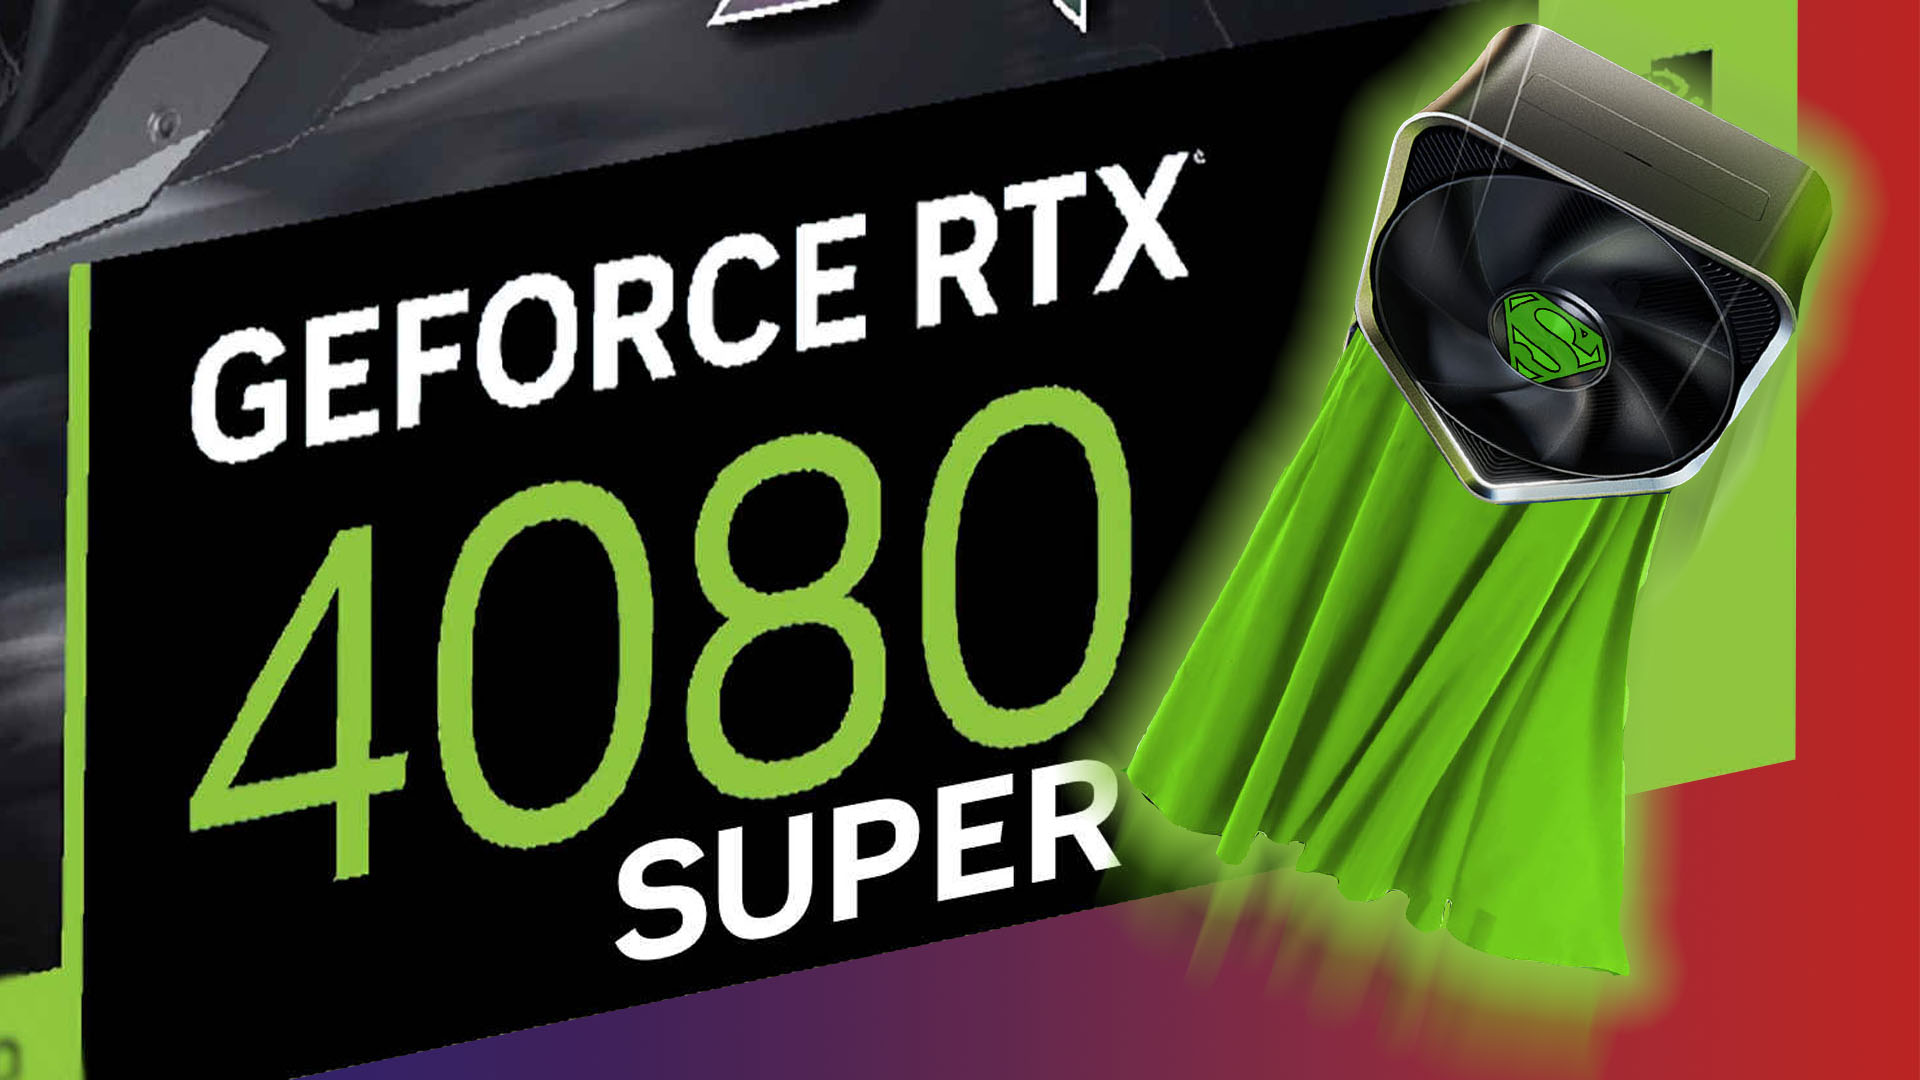 Nvidia GeForce RTX 4080 Super to use AD103 GPU according to leak